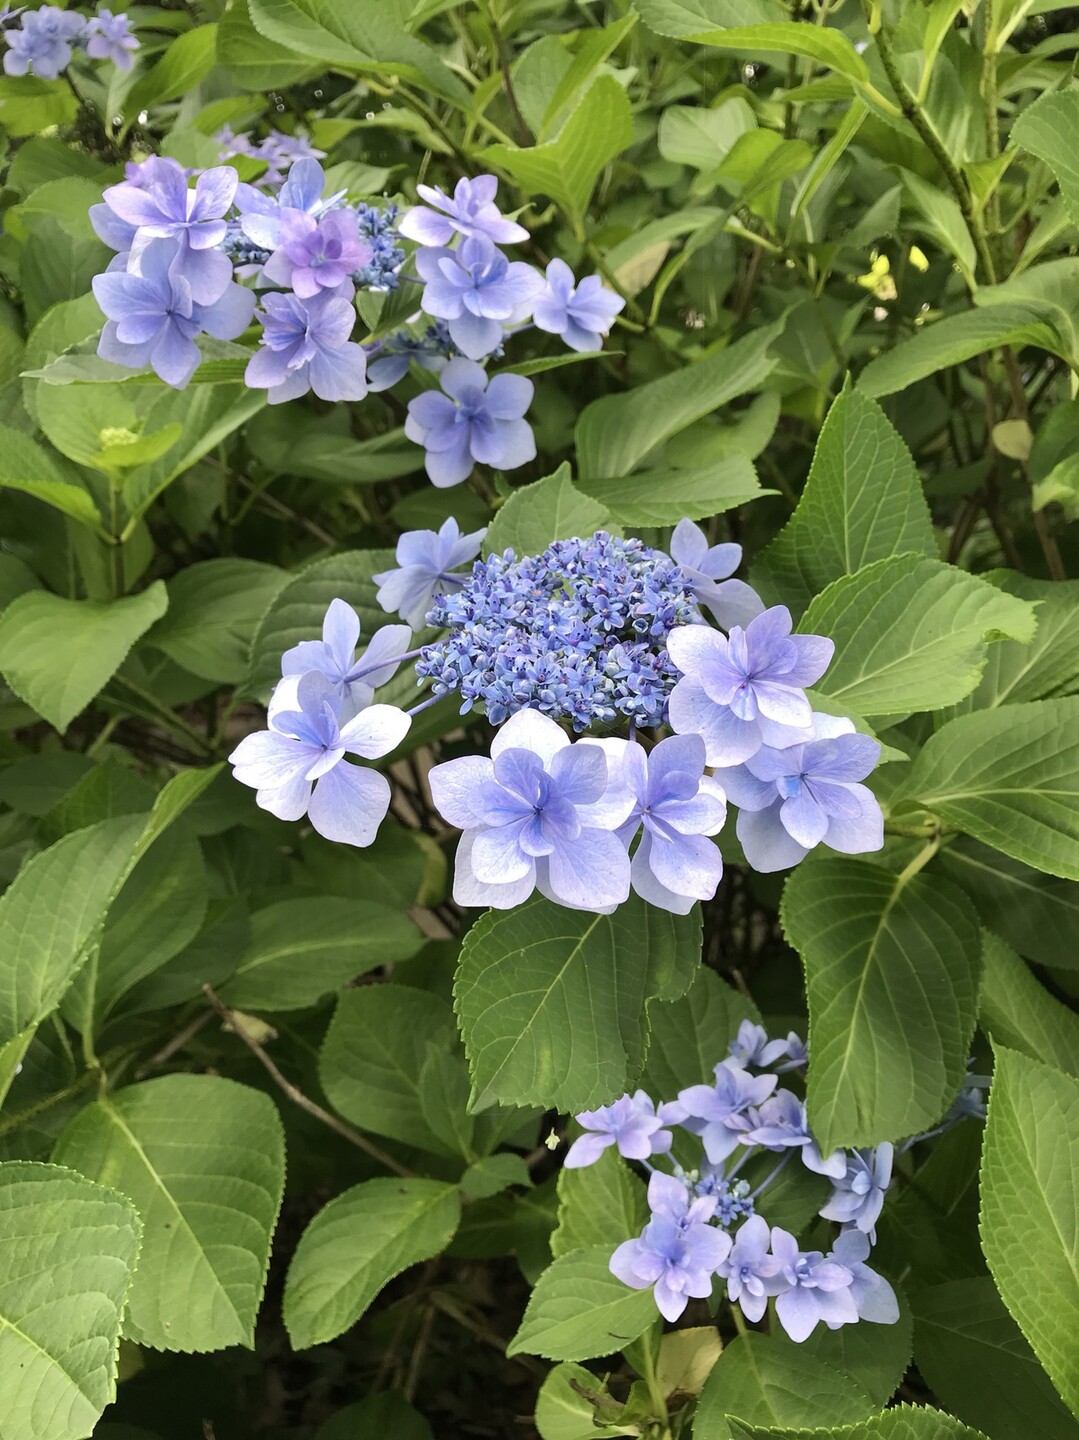 ダリアの花咲く昭和記念公園 国分寺市の写真10枚目 ガクアジサイ 城ヶ崎 装飾花は薄青 薄 Yamap ヤマップ